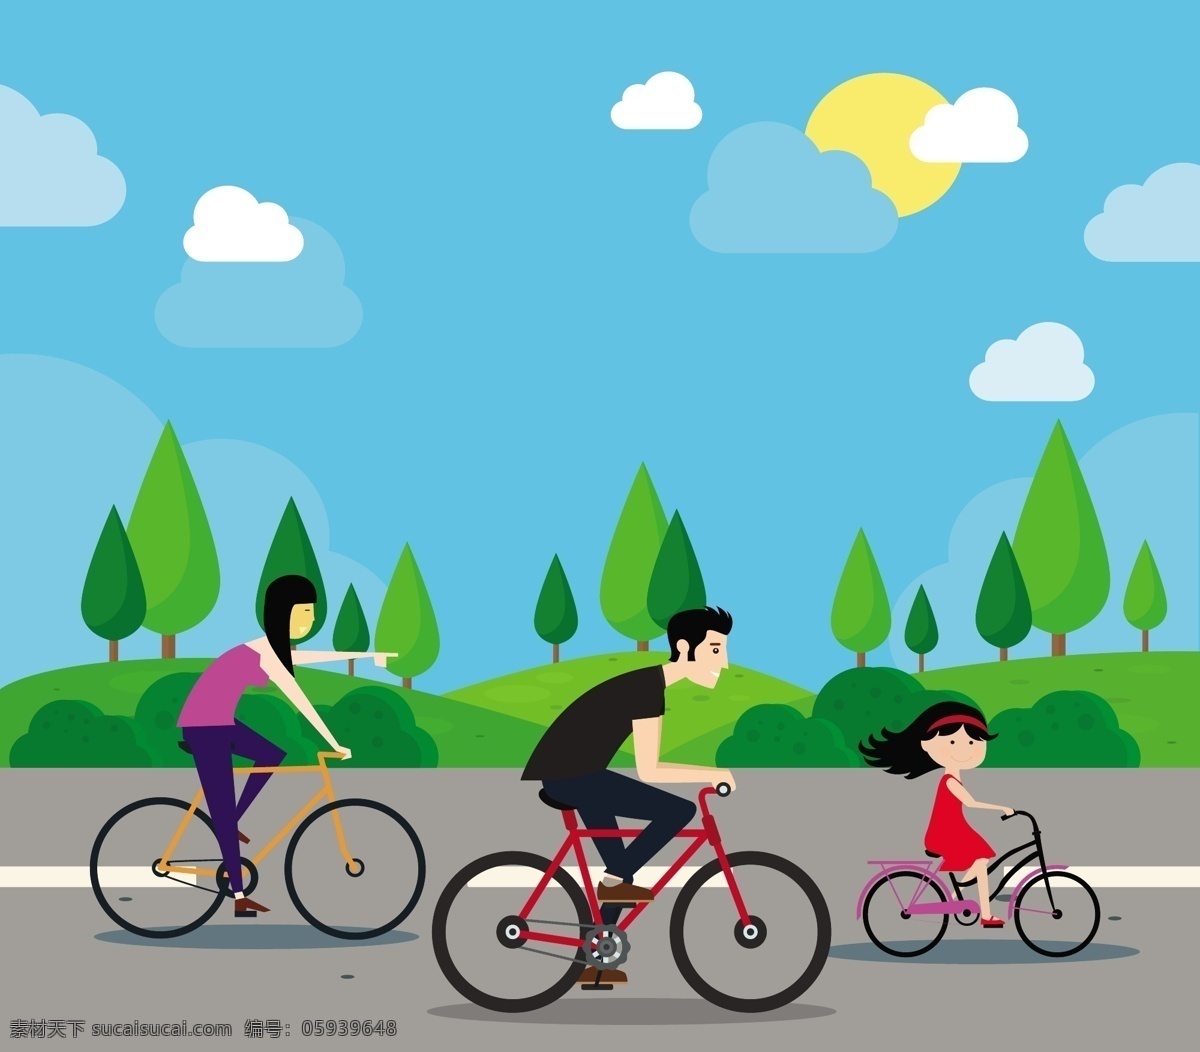 家庭 幸福 矢量 插图 骑 自行车 活动 免费 家庭幸福 骑自行车 户外 风景 绿色 矢量图